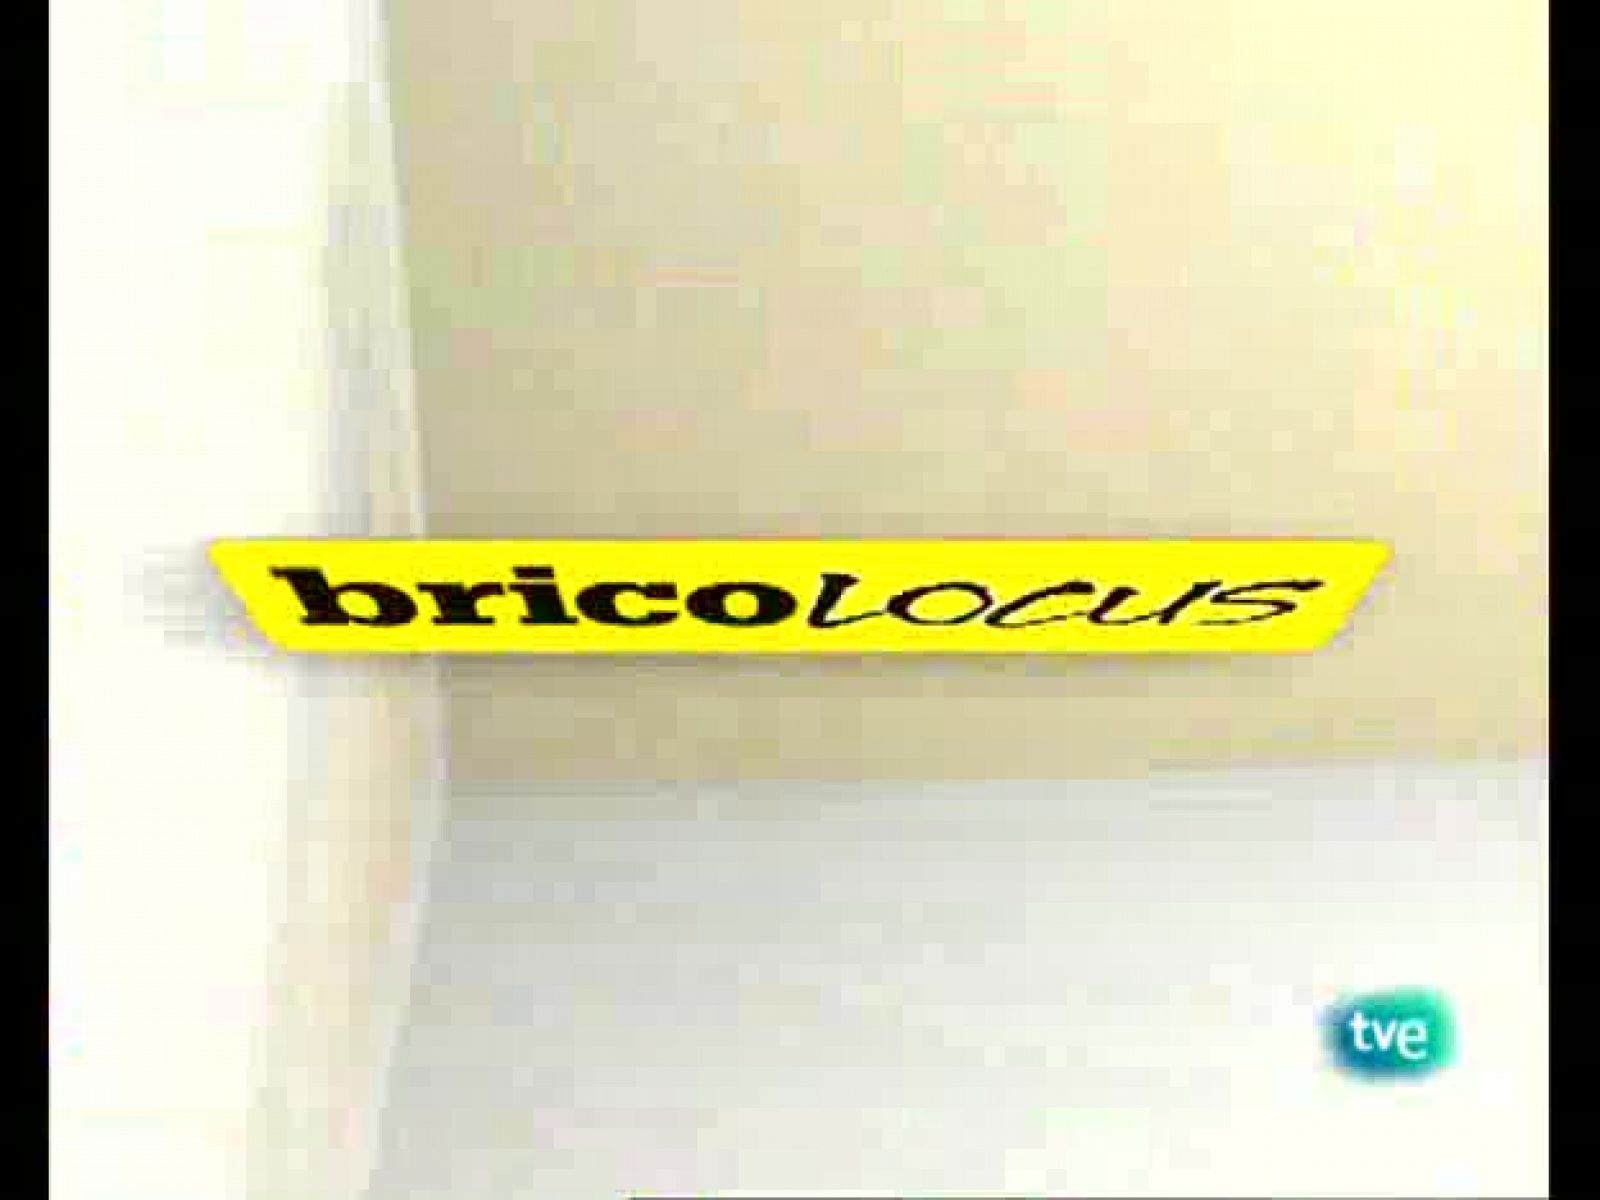 Bricolocus - 23/01/09